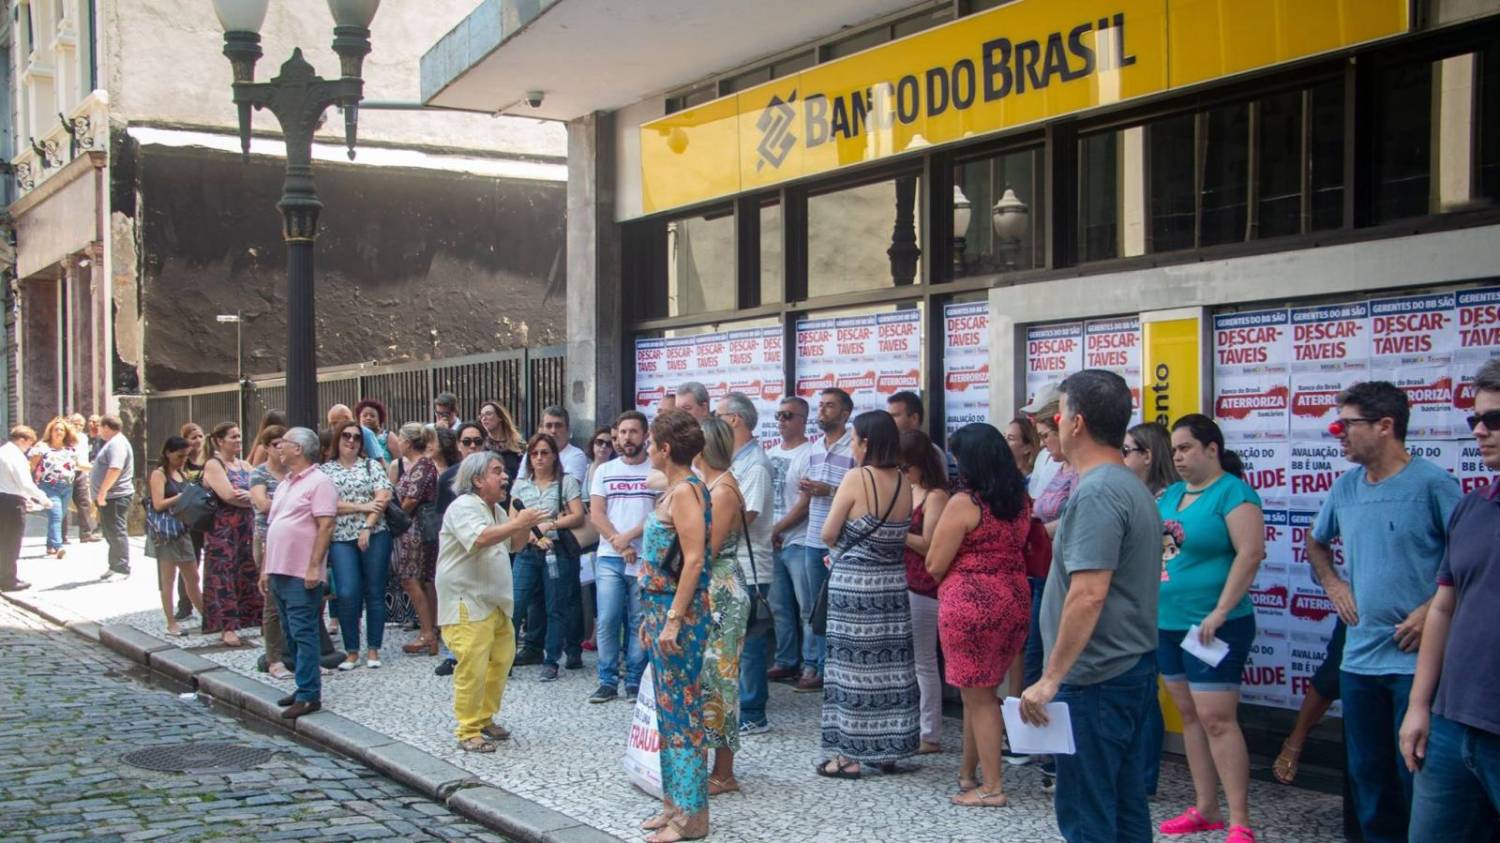 Banco do Brasil restringe divulgação de condenação por assédio